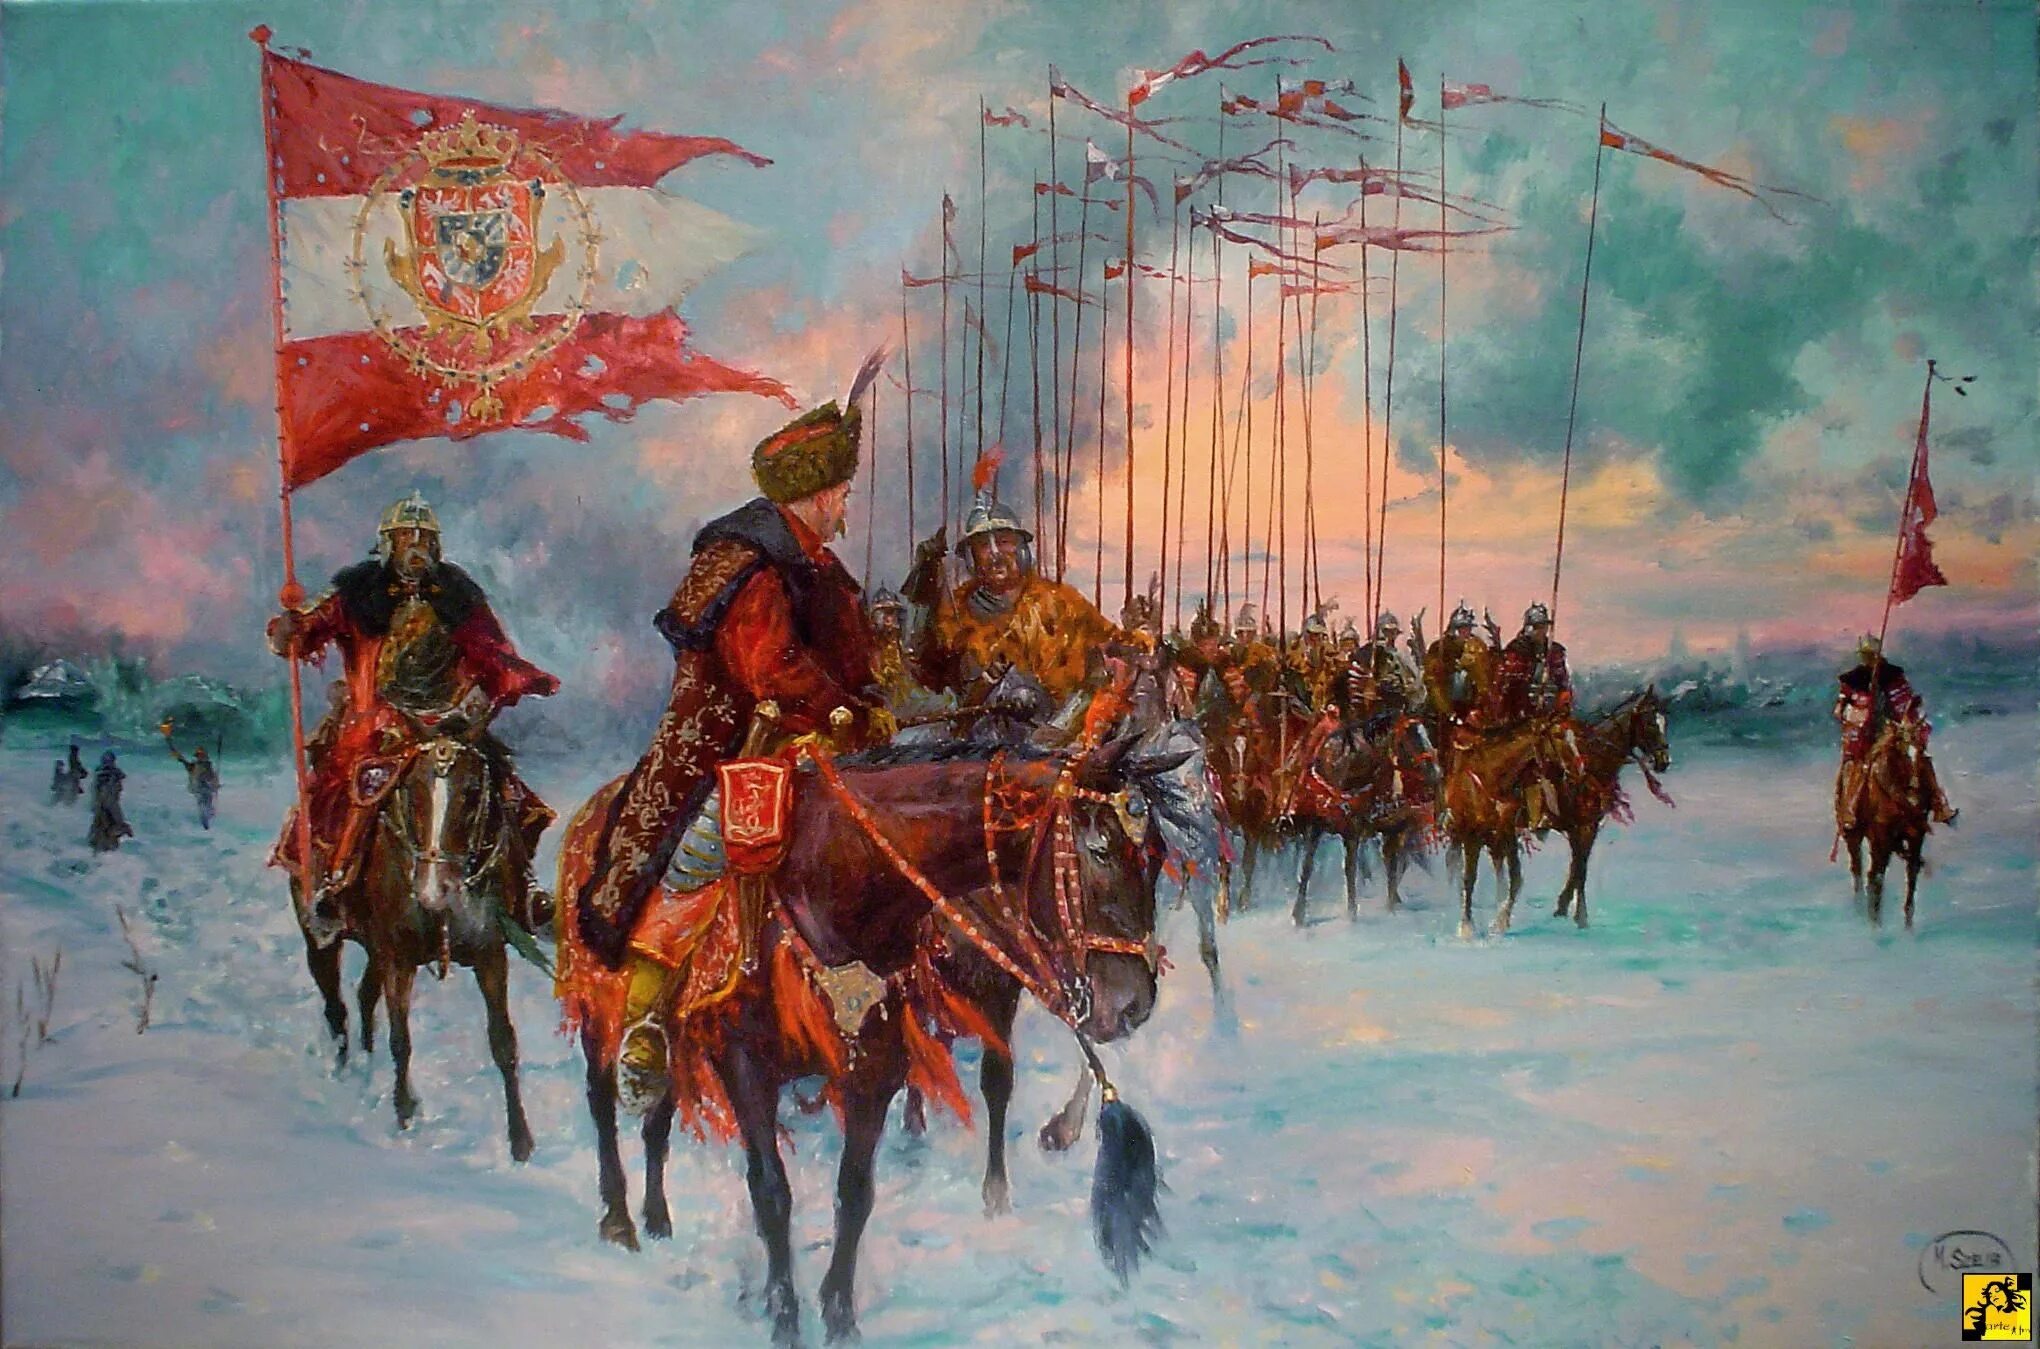 Mirosław Szeib Гусария. Польские войска 17 век. Войско речи Посполитой 16 век. Шеин смутное время